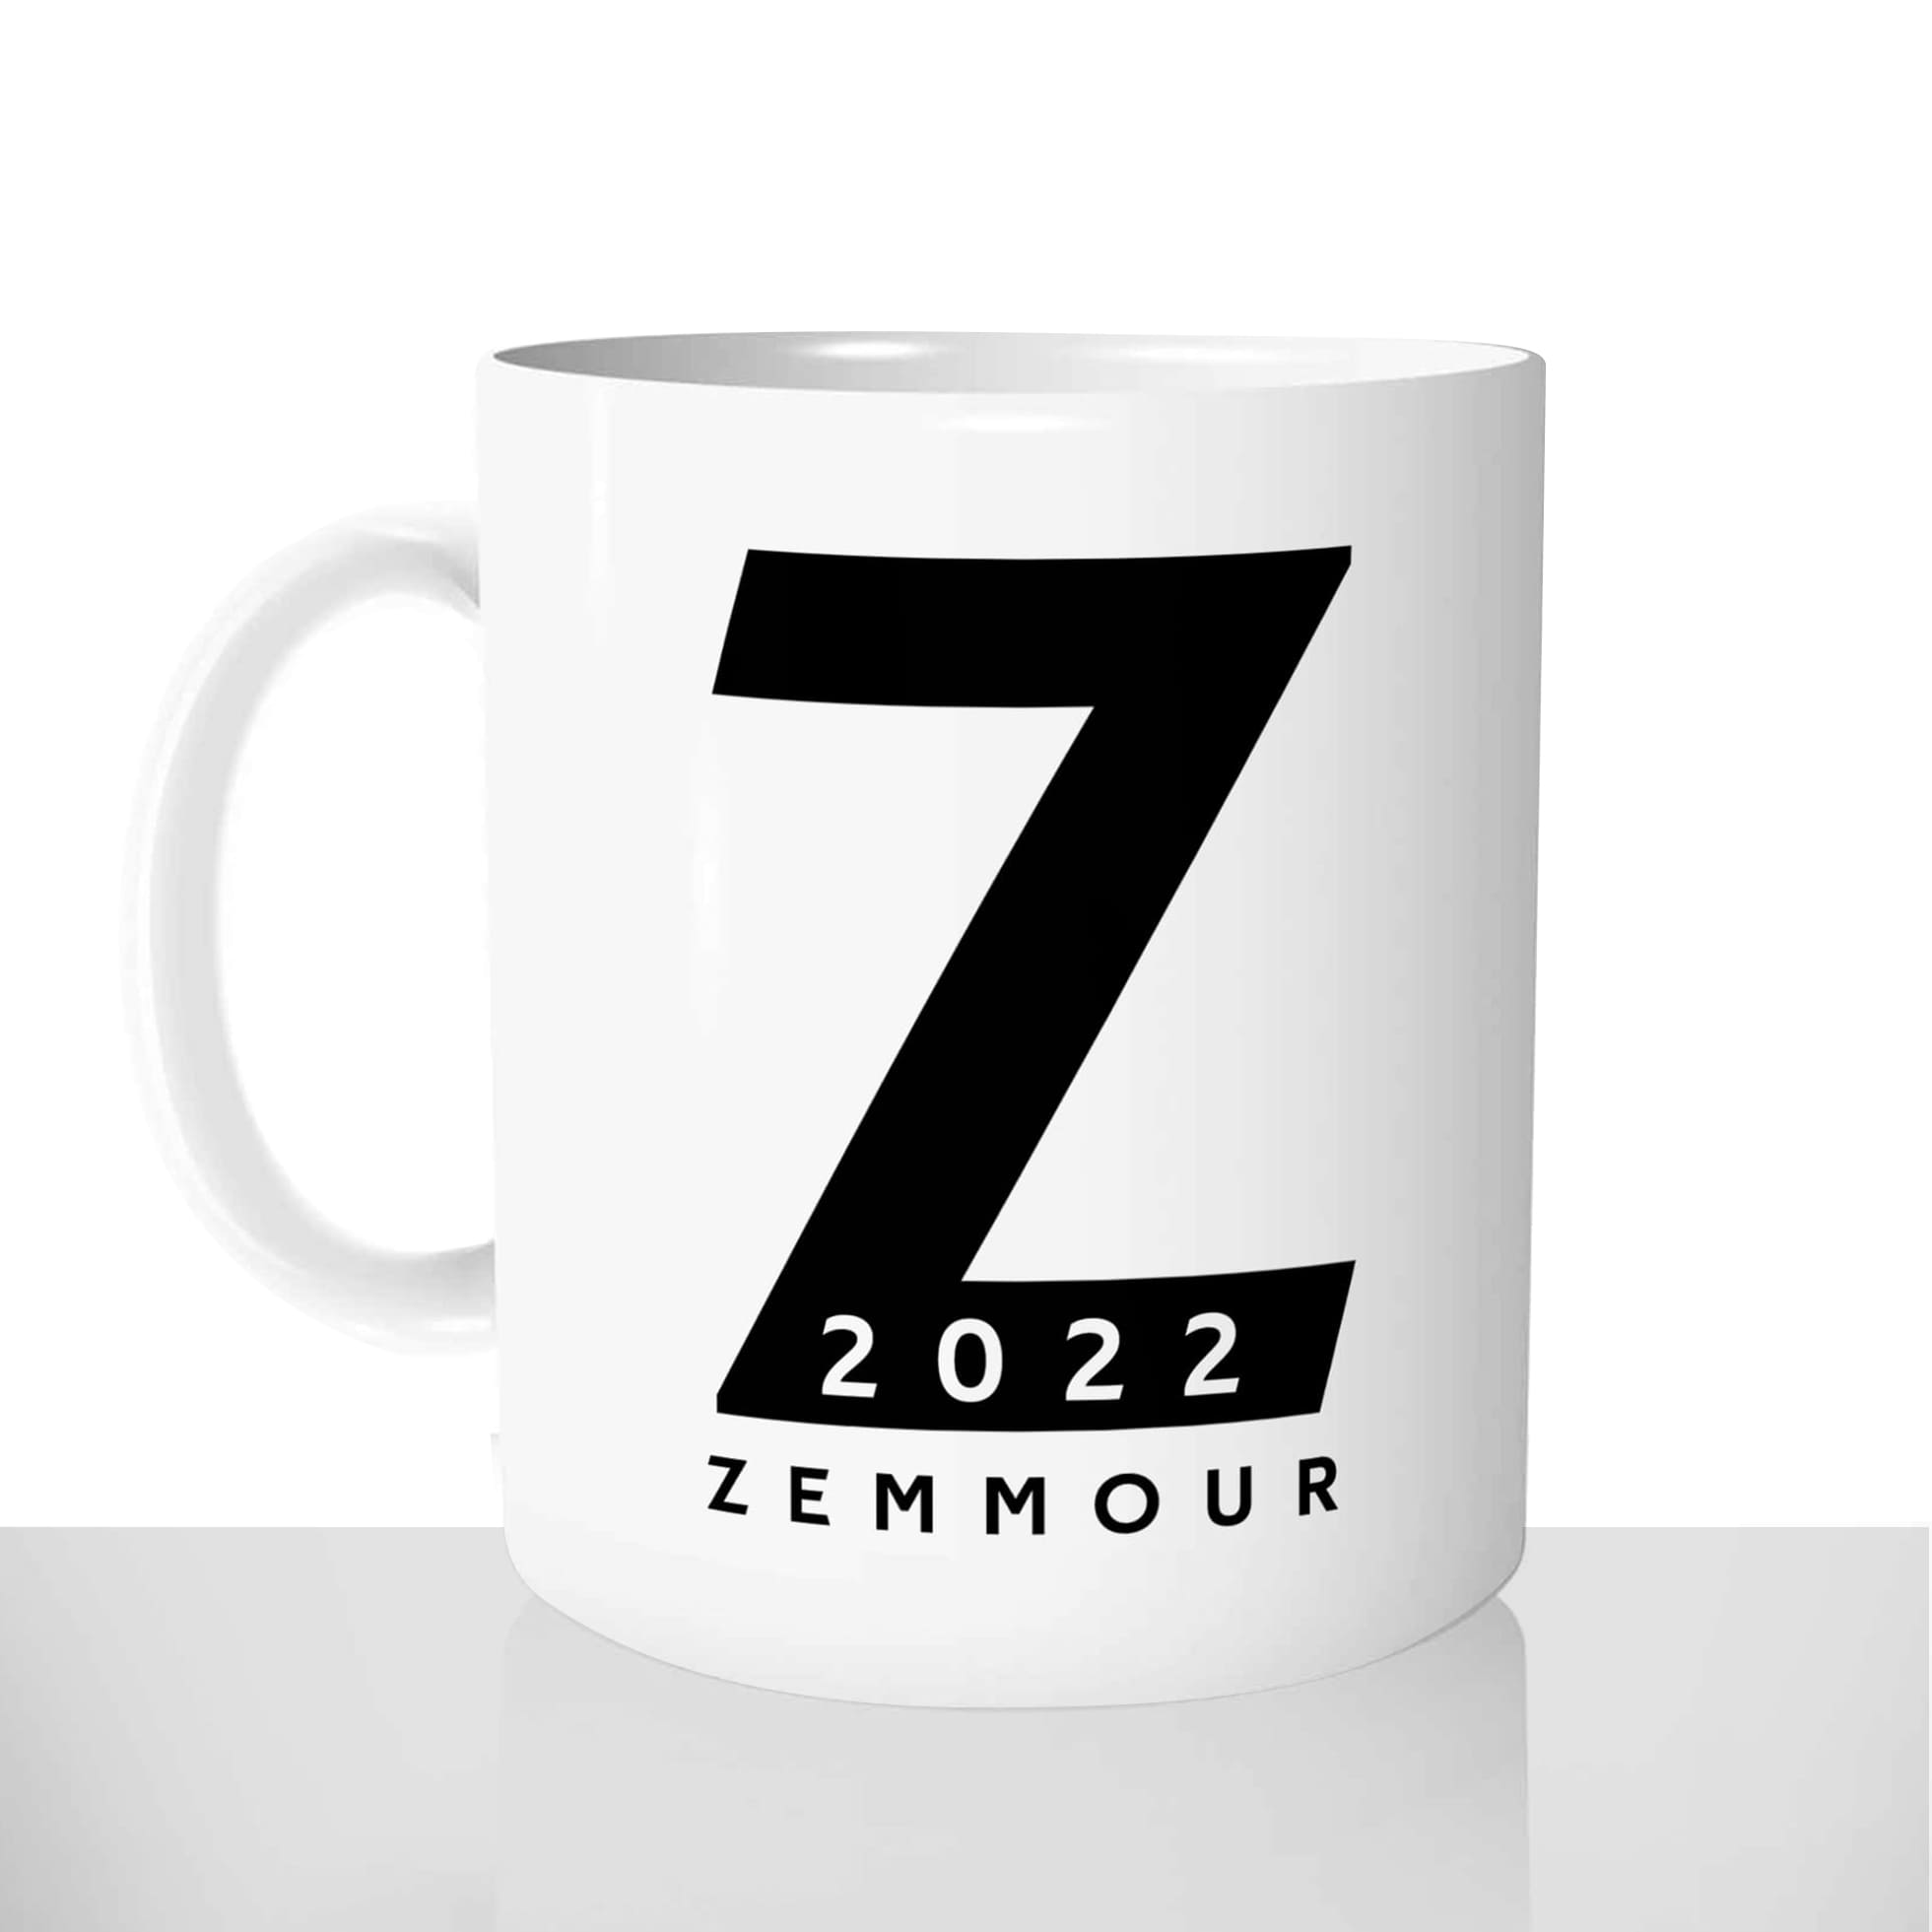 mug classique en céramique 11oz personnalisé personnalisation photo le z zemmour 2022 eric president france personnalisable cadeau